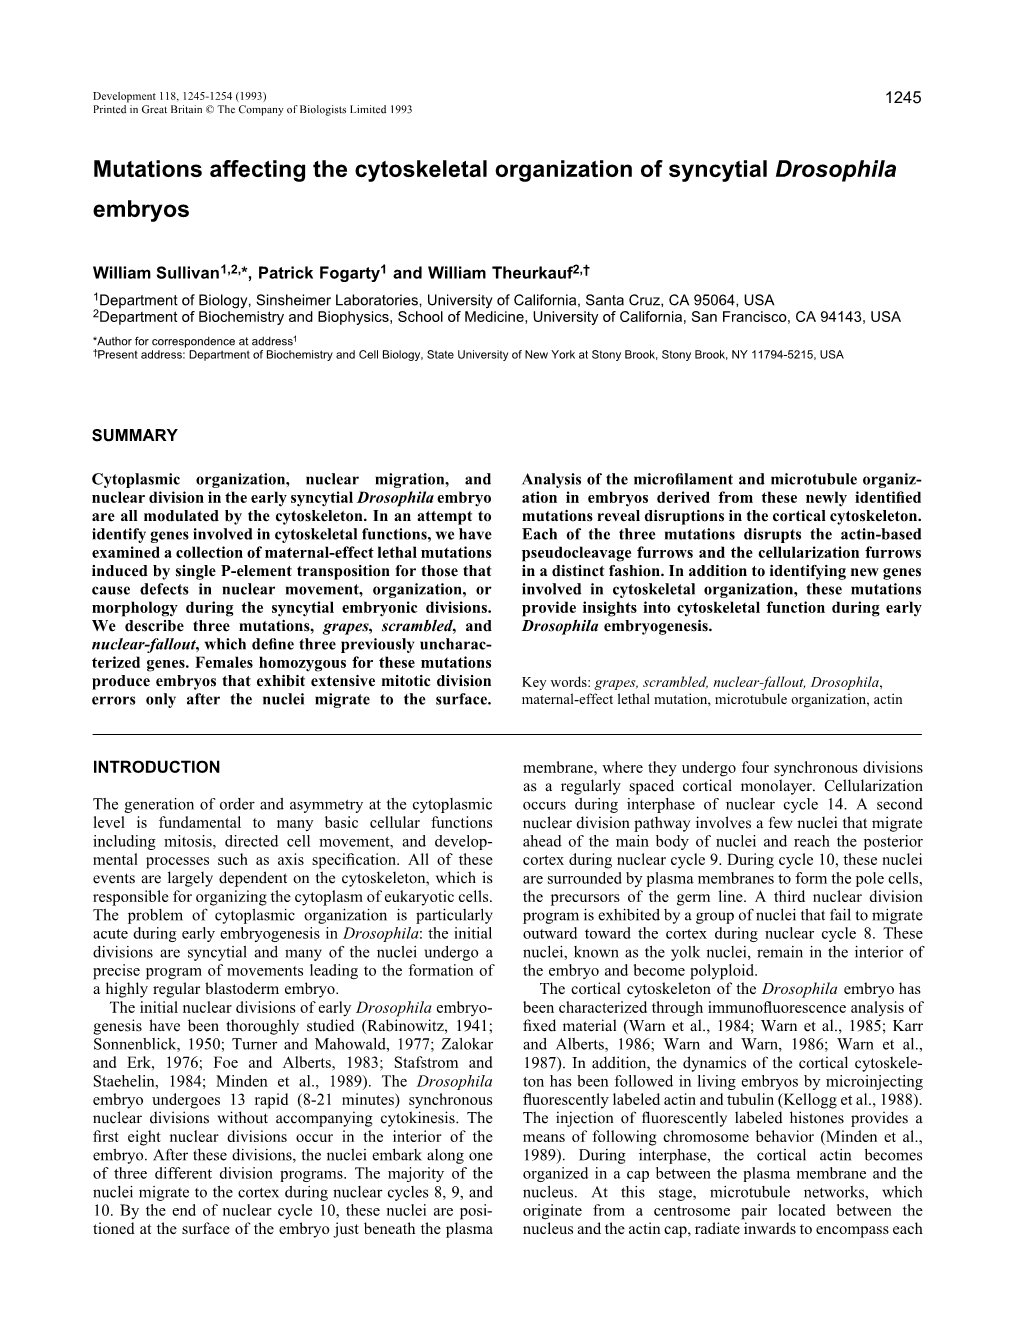 Mutations Affecting the Cytoskeletal Organization of Syncytial Drosophila Embryos